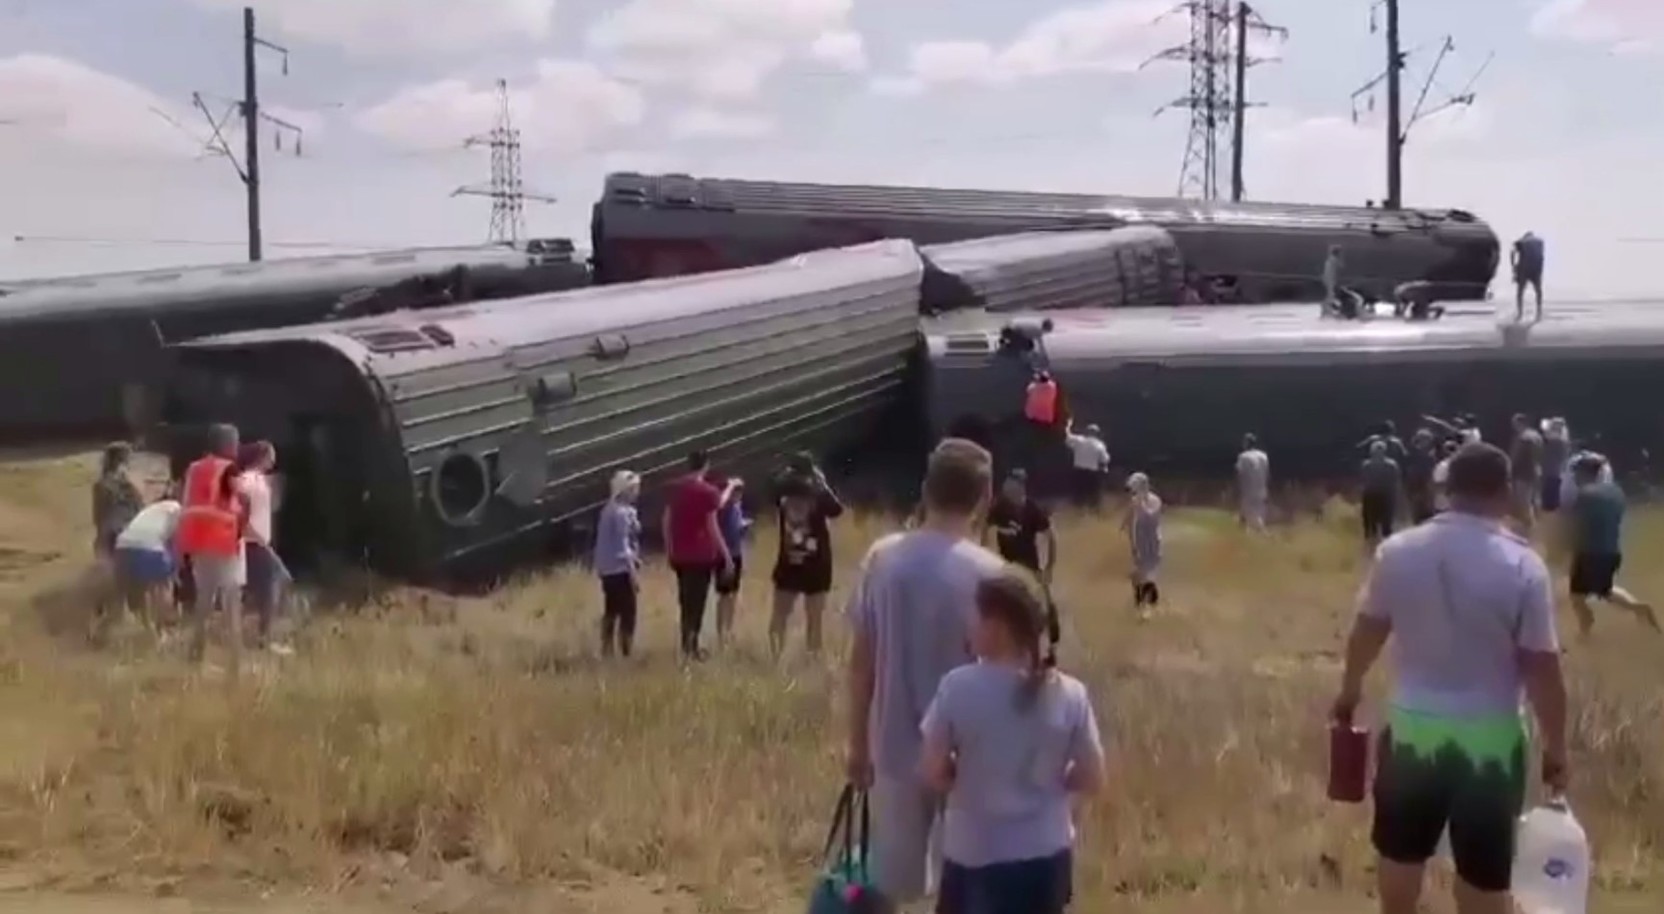 При сходе девяти вагонов поезда с рельсов под Волгоградом пострадали 52 человека